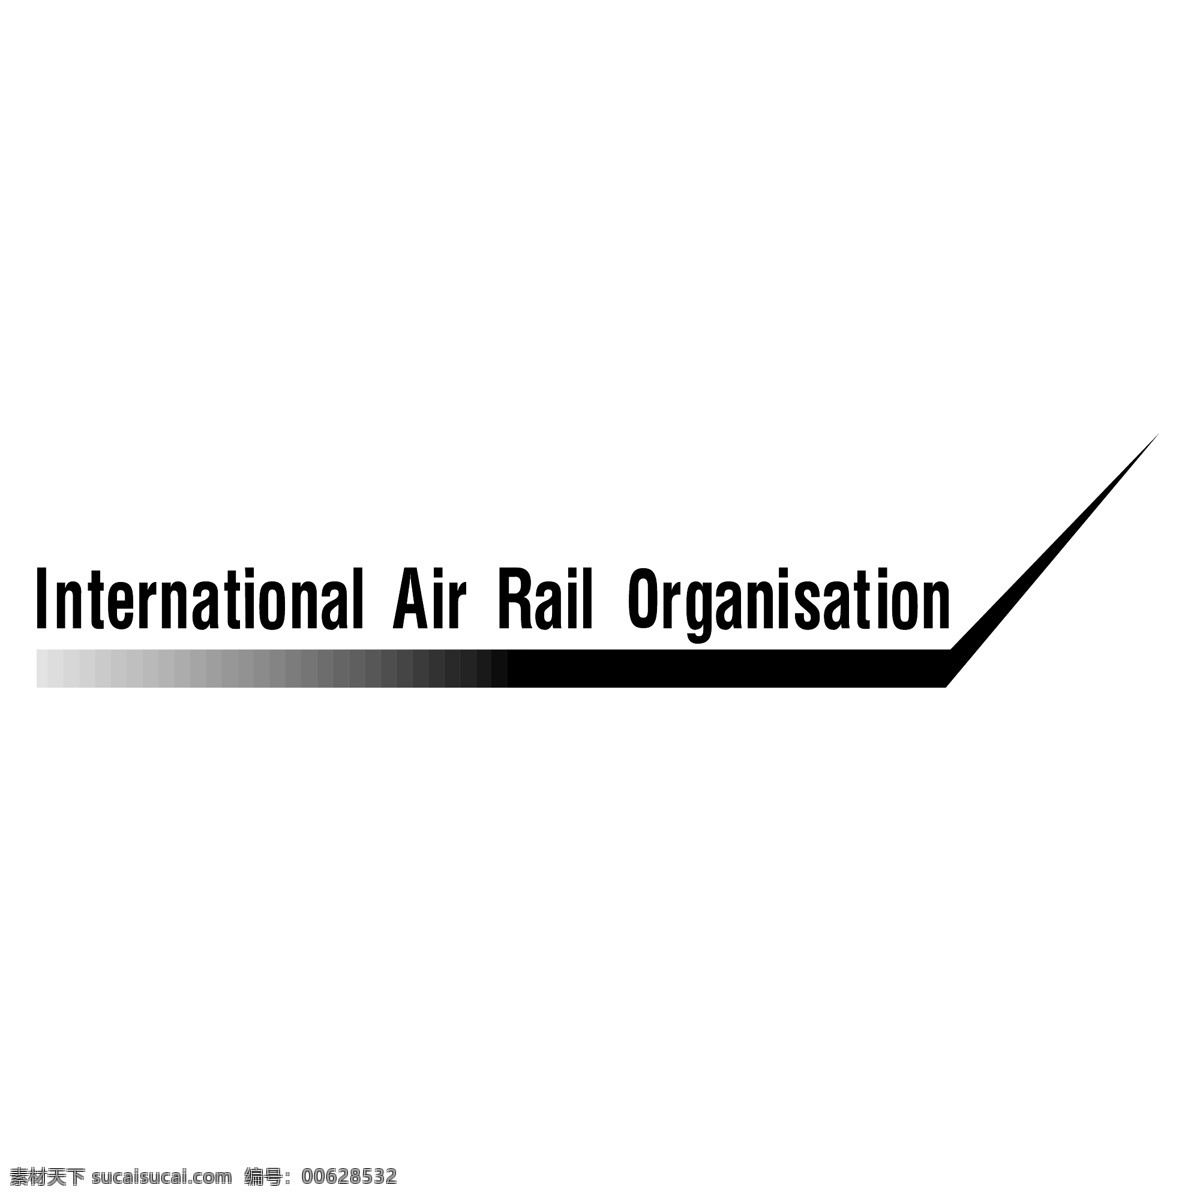 国际航空 铁路 组织 国际 航空 航空铁路 铁路组织 向量 国际空运 货物 载体 航空运输 国际航空运输 矢量图 建筑家居